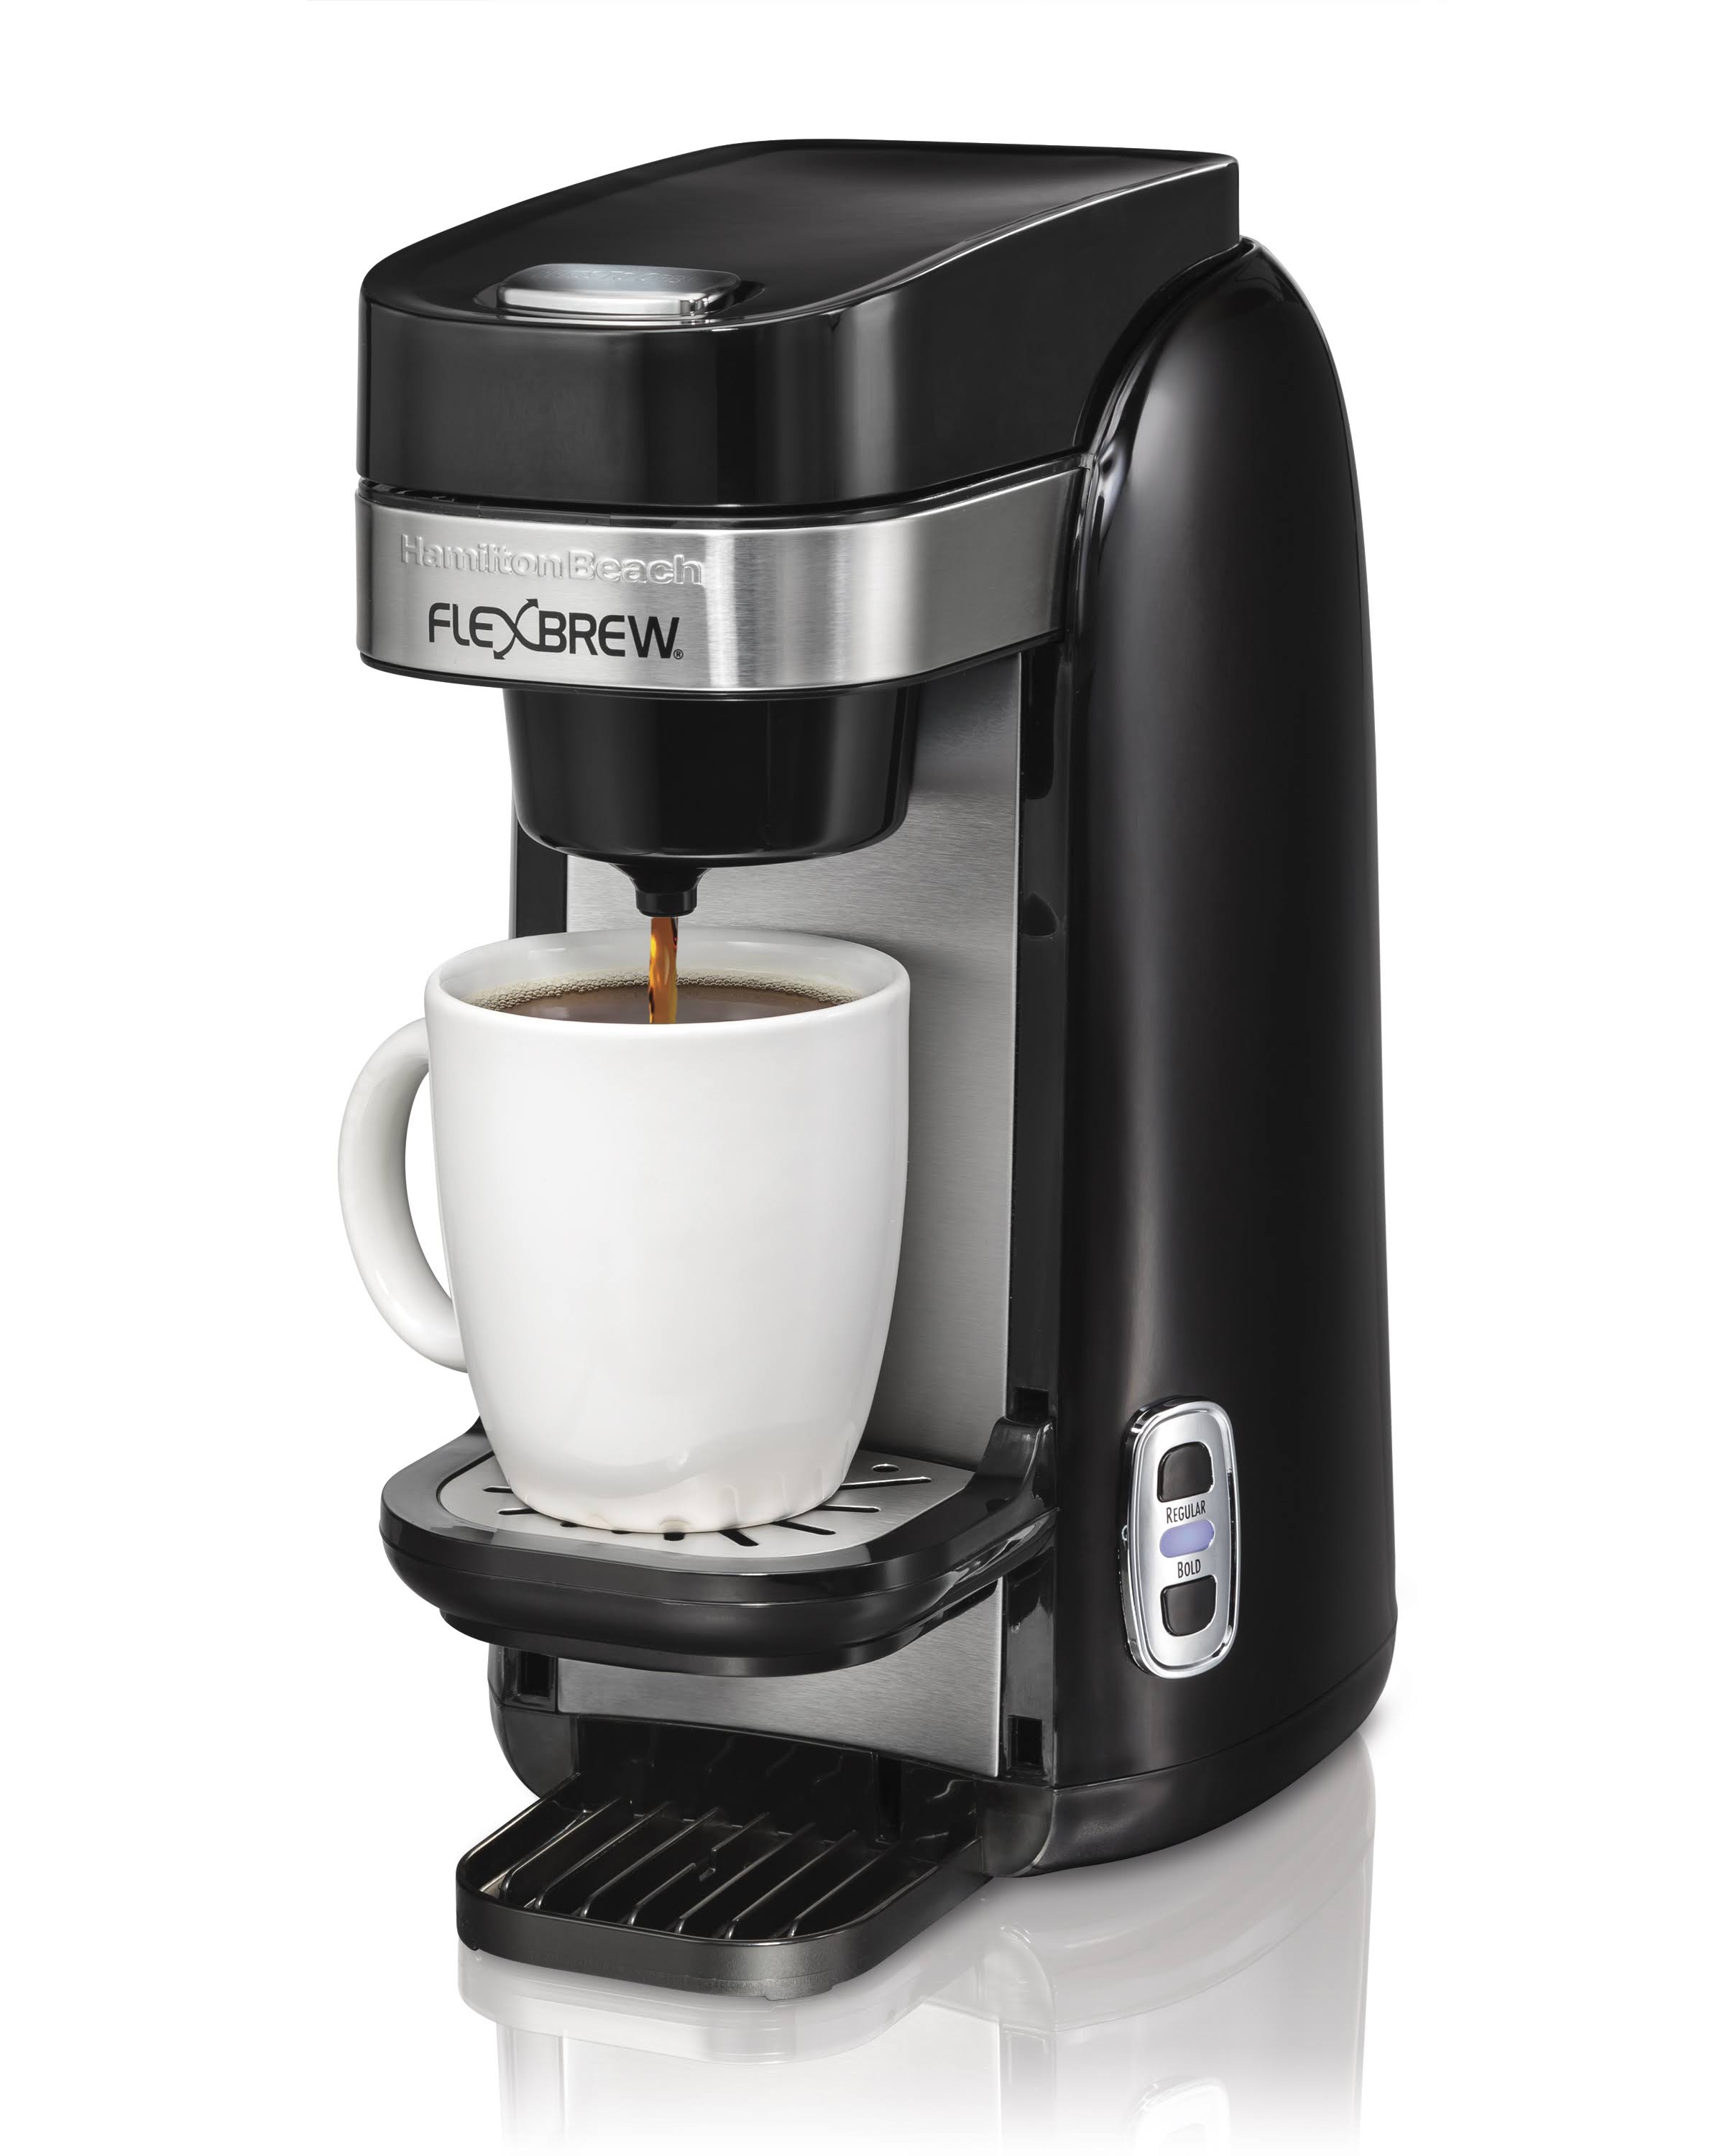 Hamilton Beach ماكينة صنع القهوة ذات الخدمة الواحدة Flexbrew (49997)